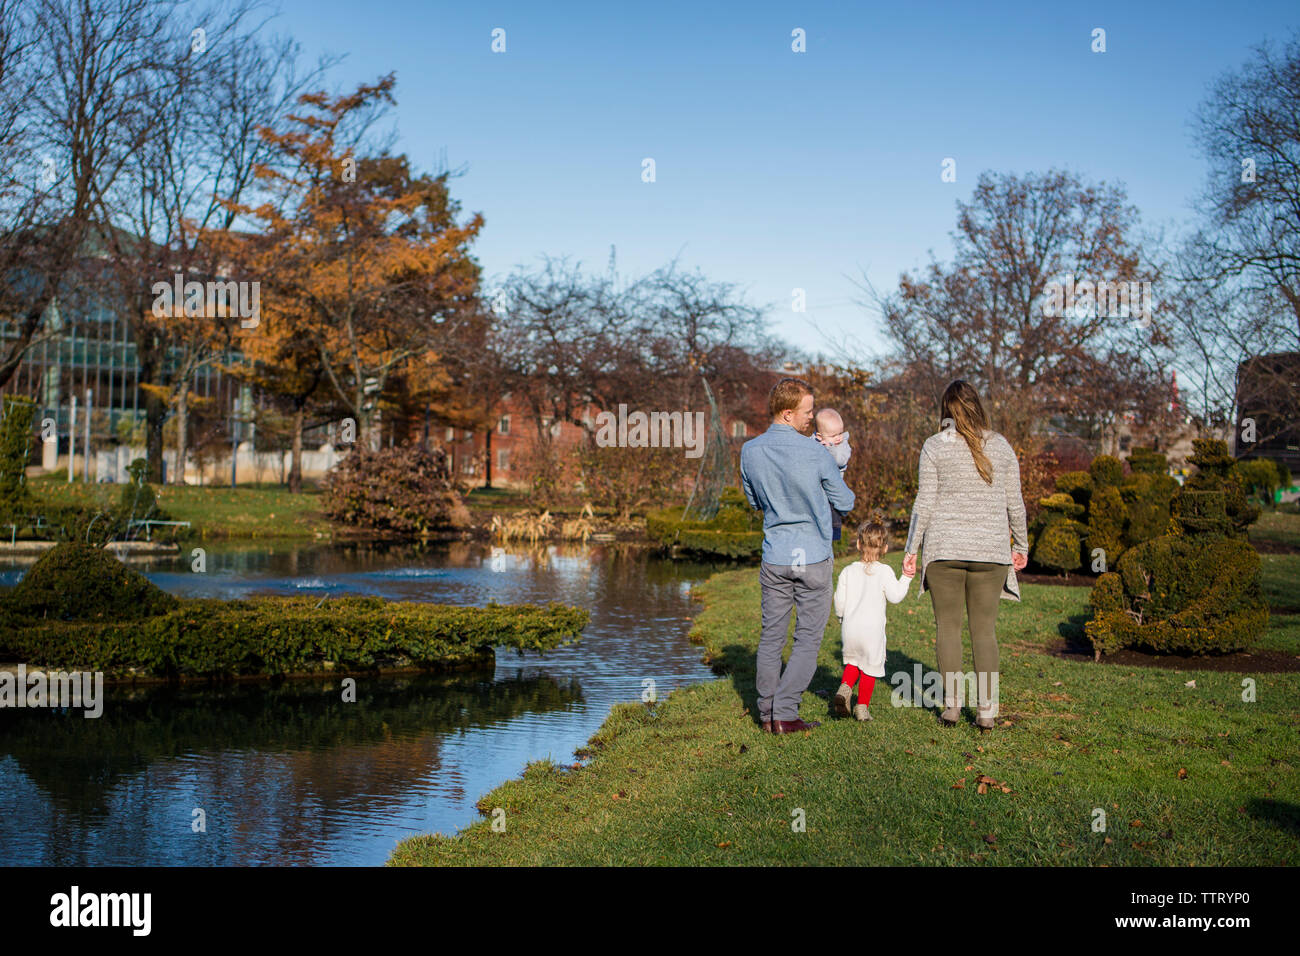 Dietro la vista di una famiglia camminare insieme in un parco in autunno sunshine Foto Stock